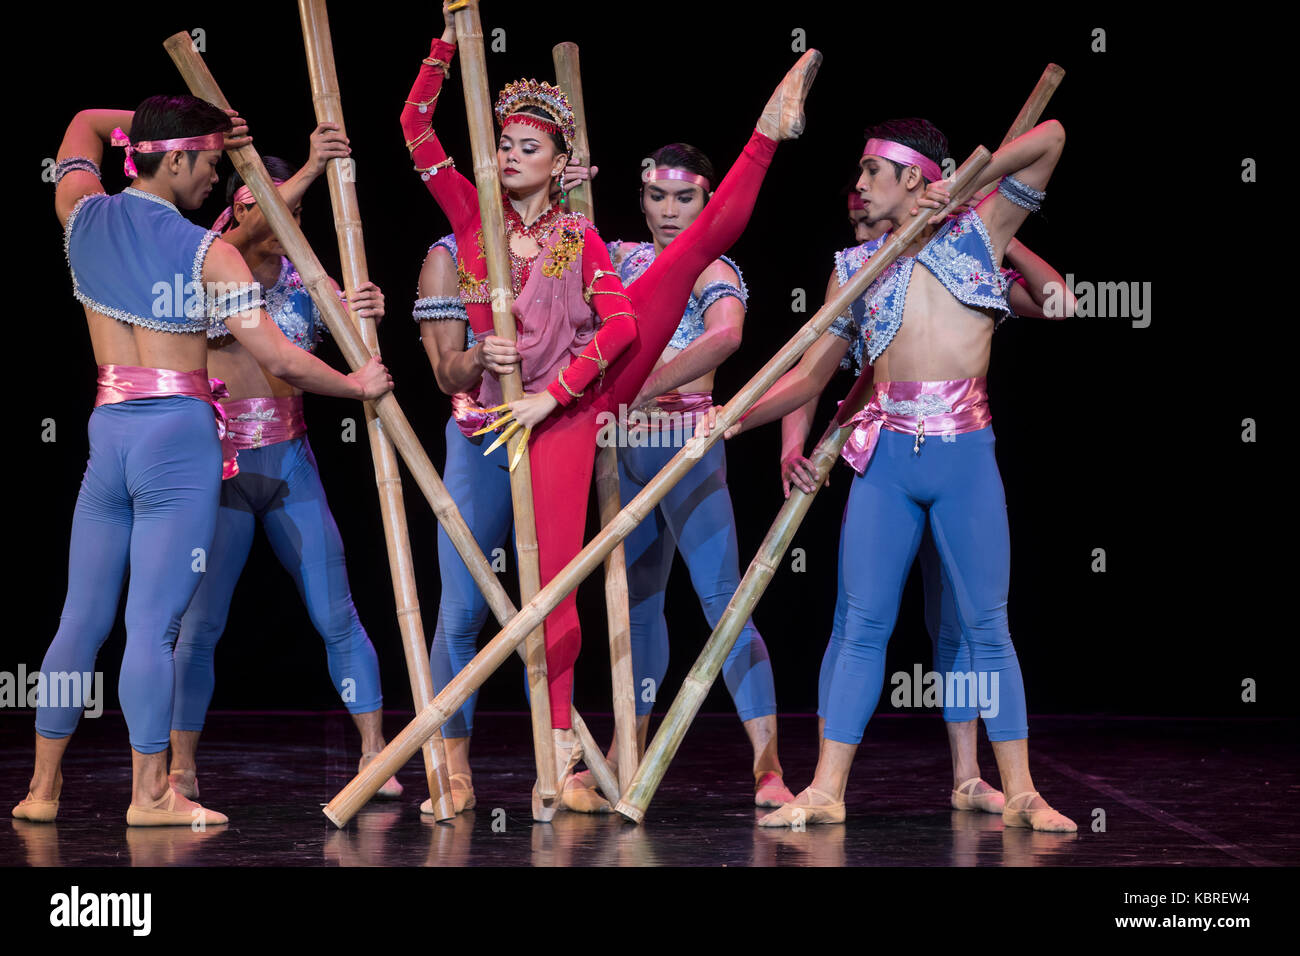 Die Leistung der Tanzgruppe der Philippinen Manila 'Ballett'  Stockfotografie - Alamy